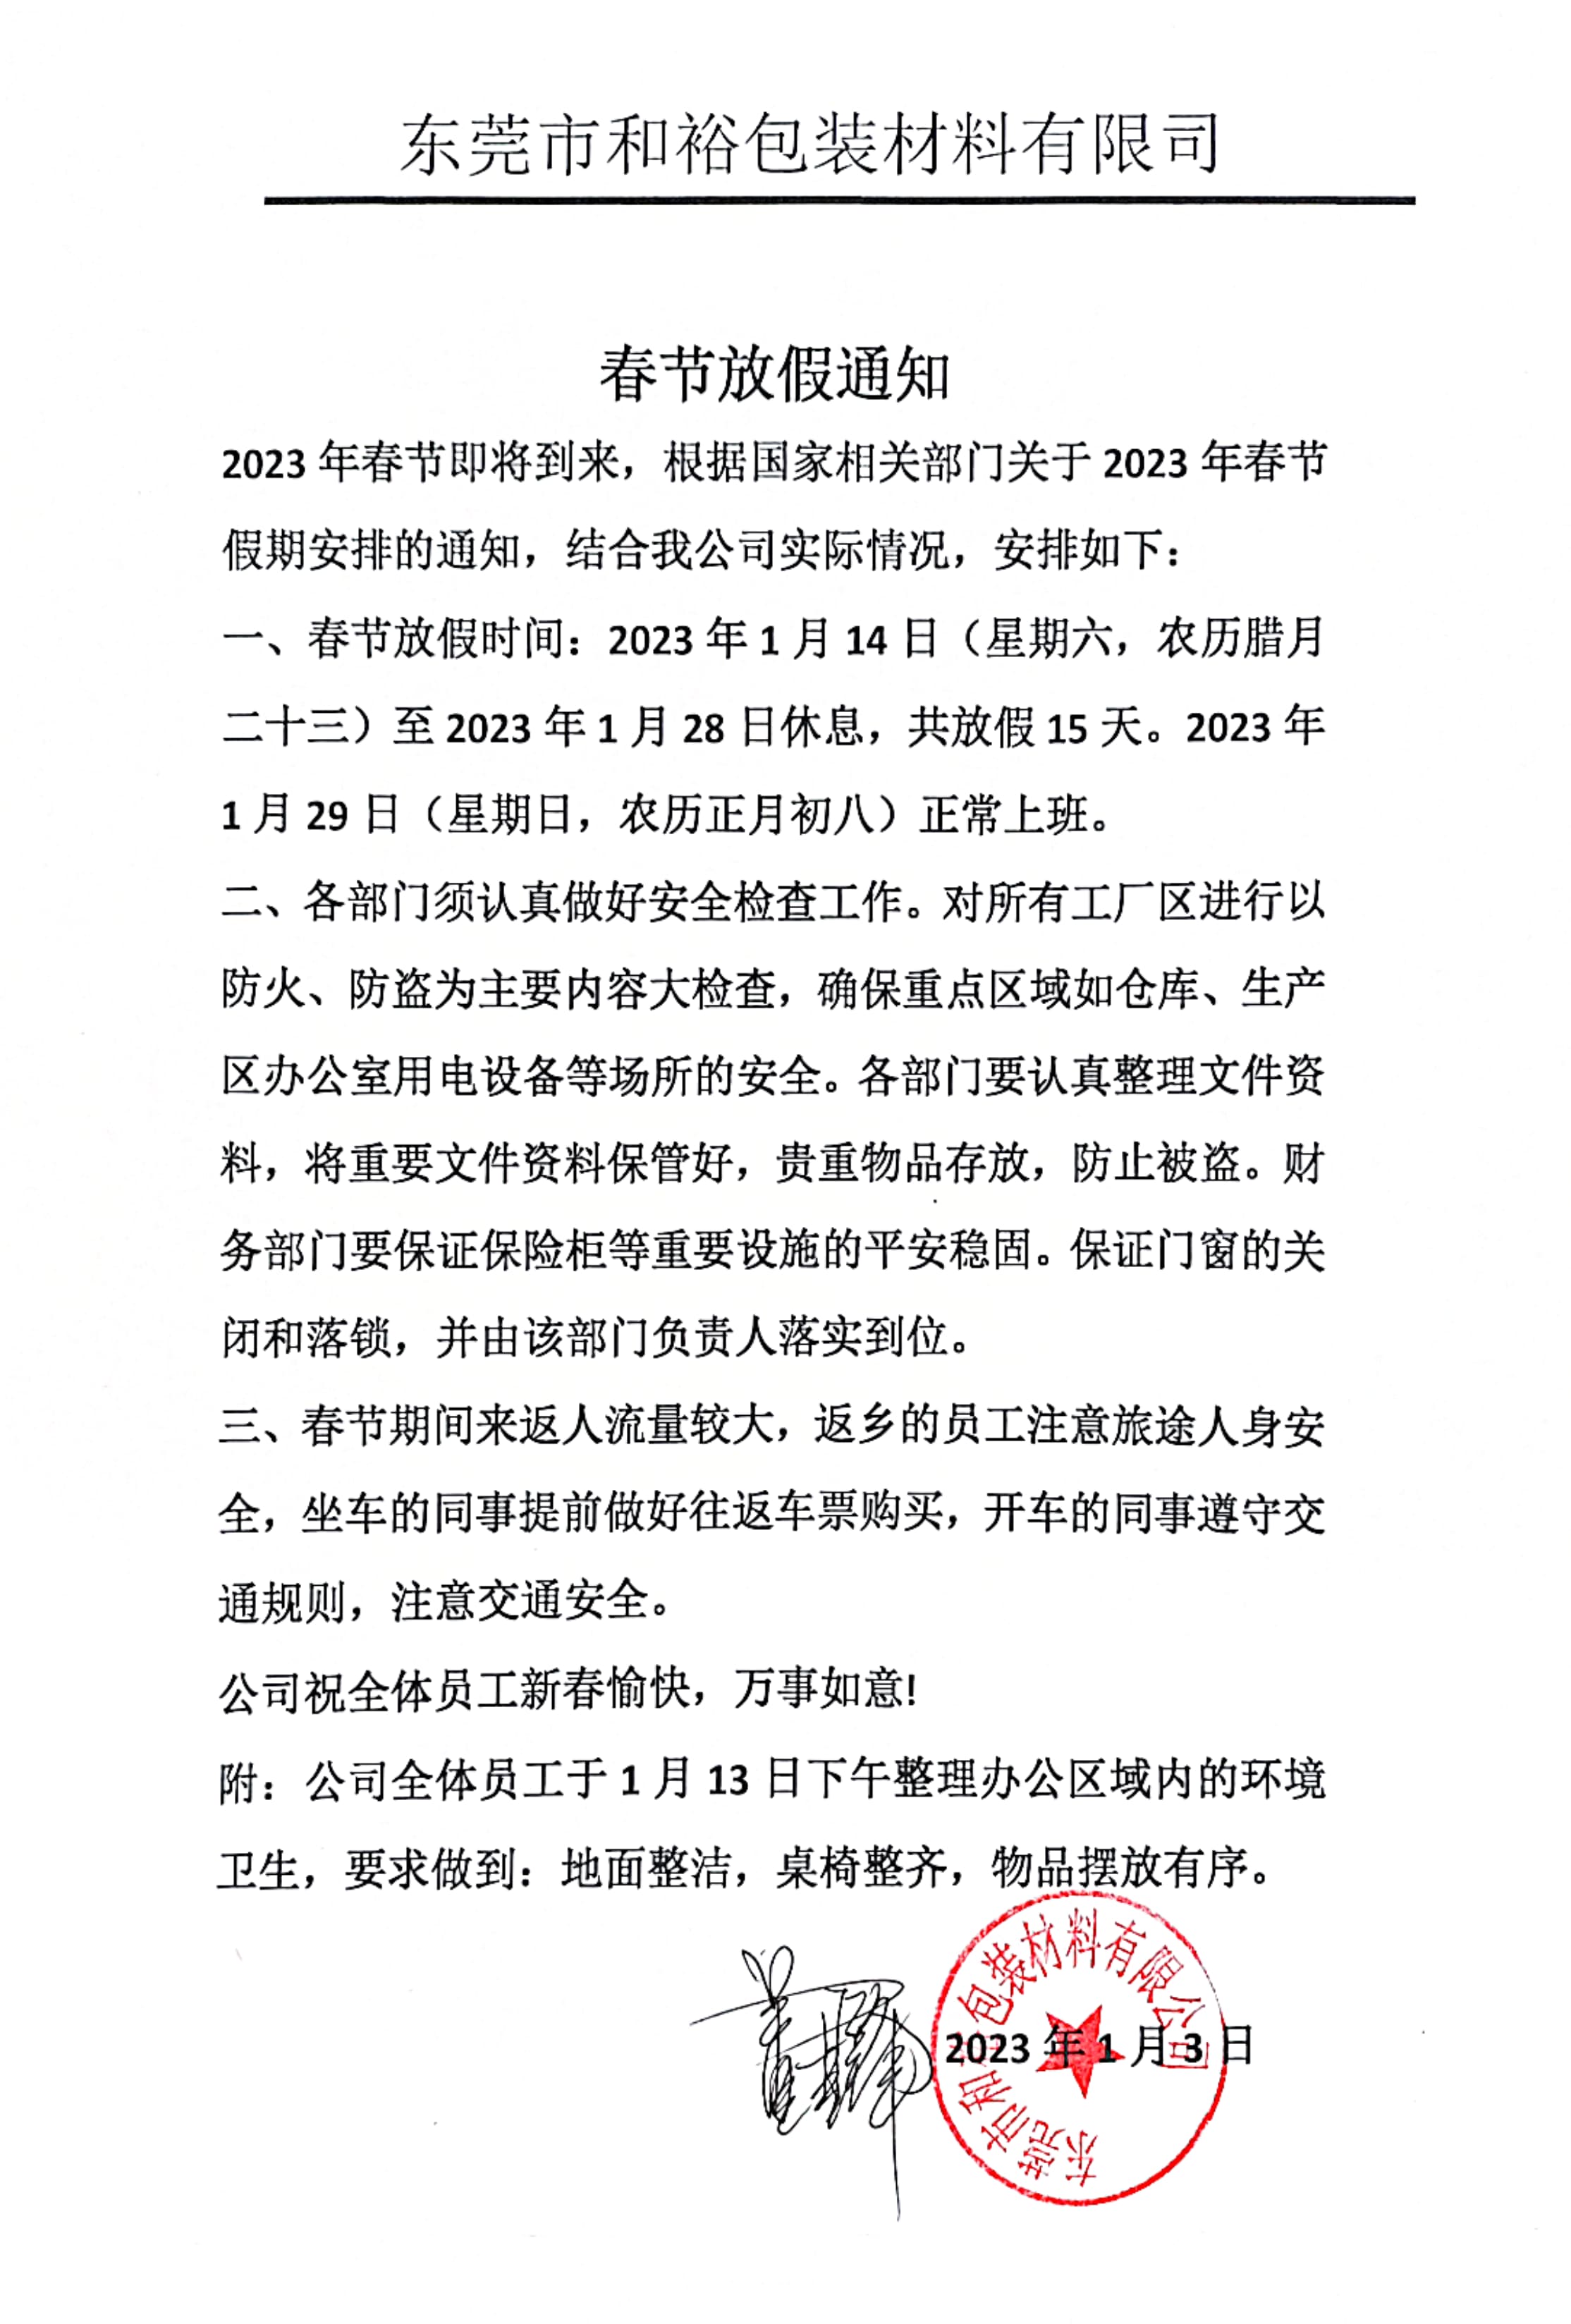 宁波市2023年和裕包装春节放假通知